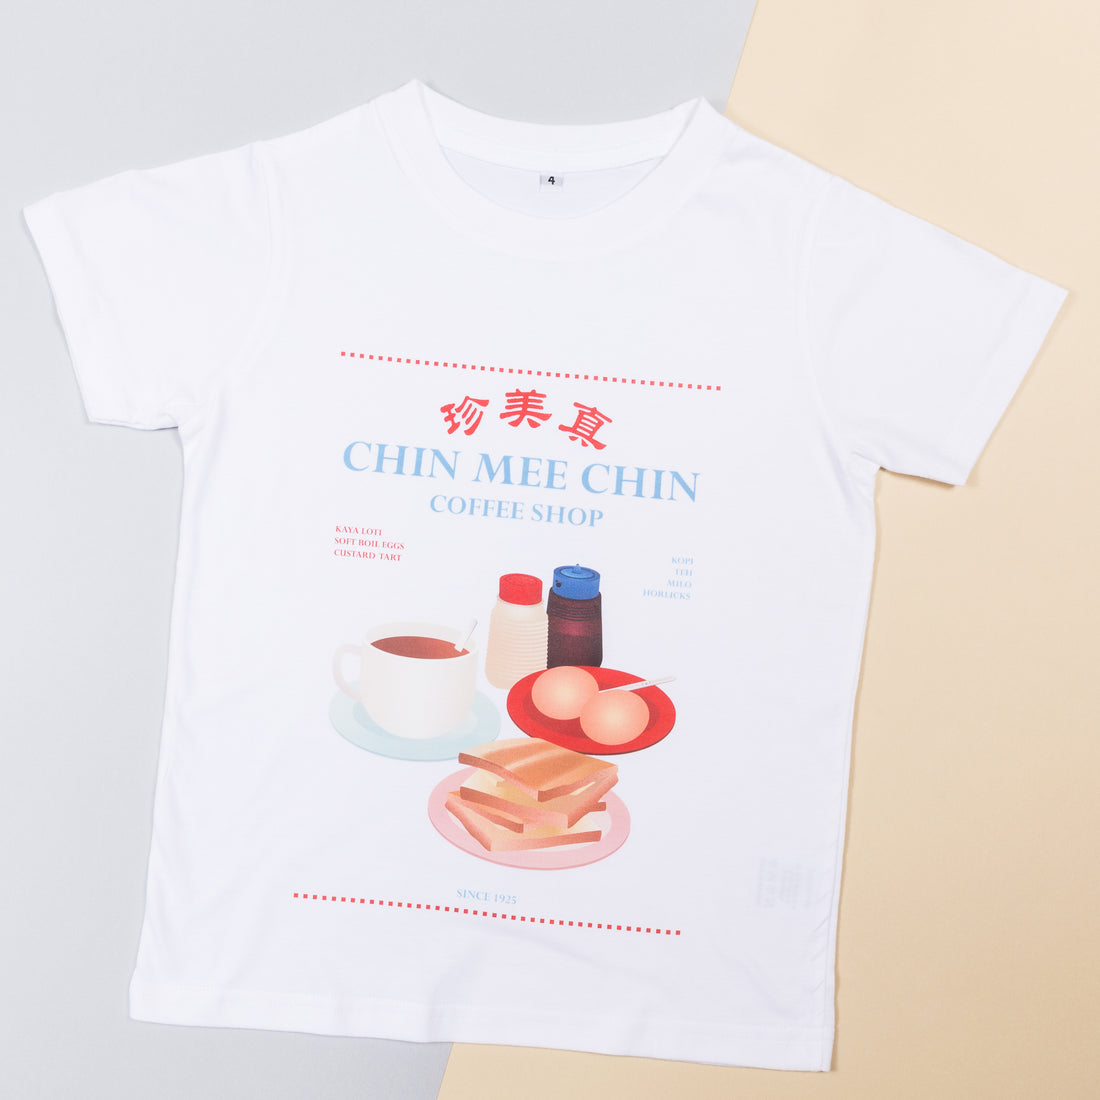 Chin Mee Chin Toast T-shirt